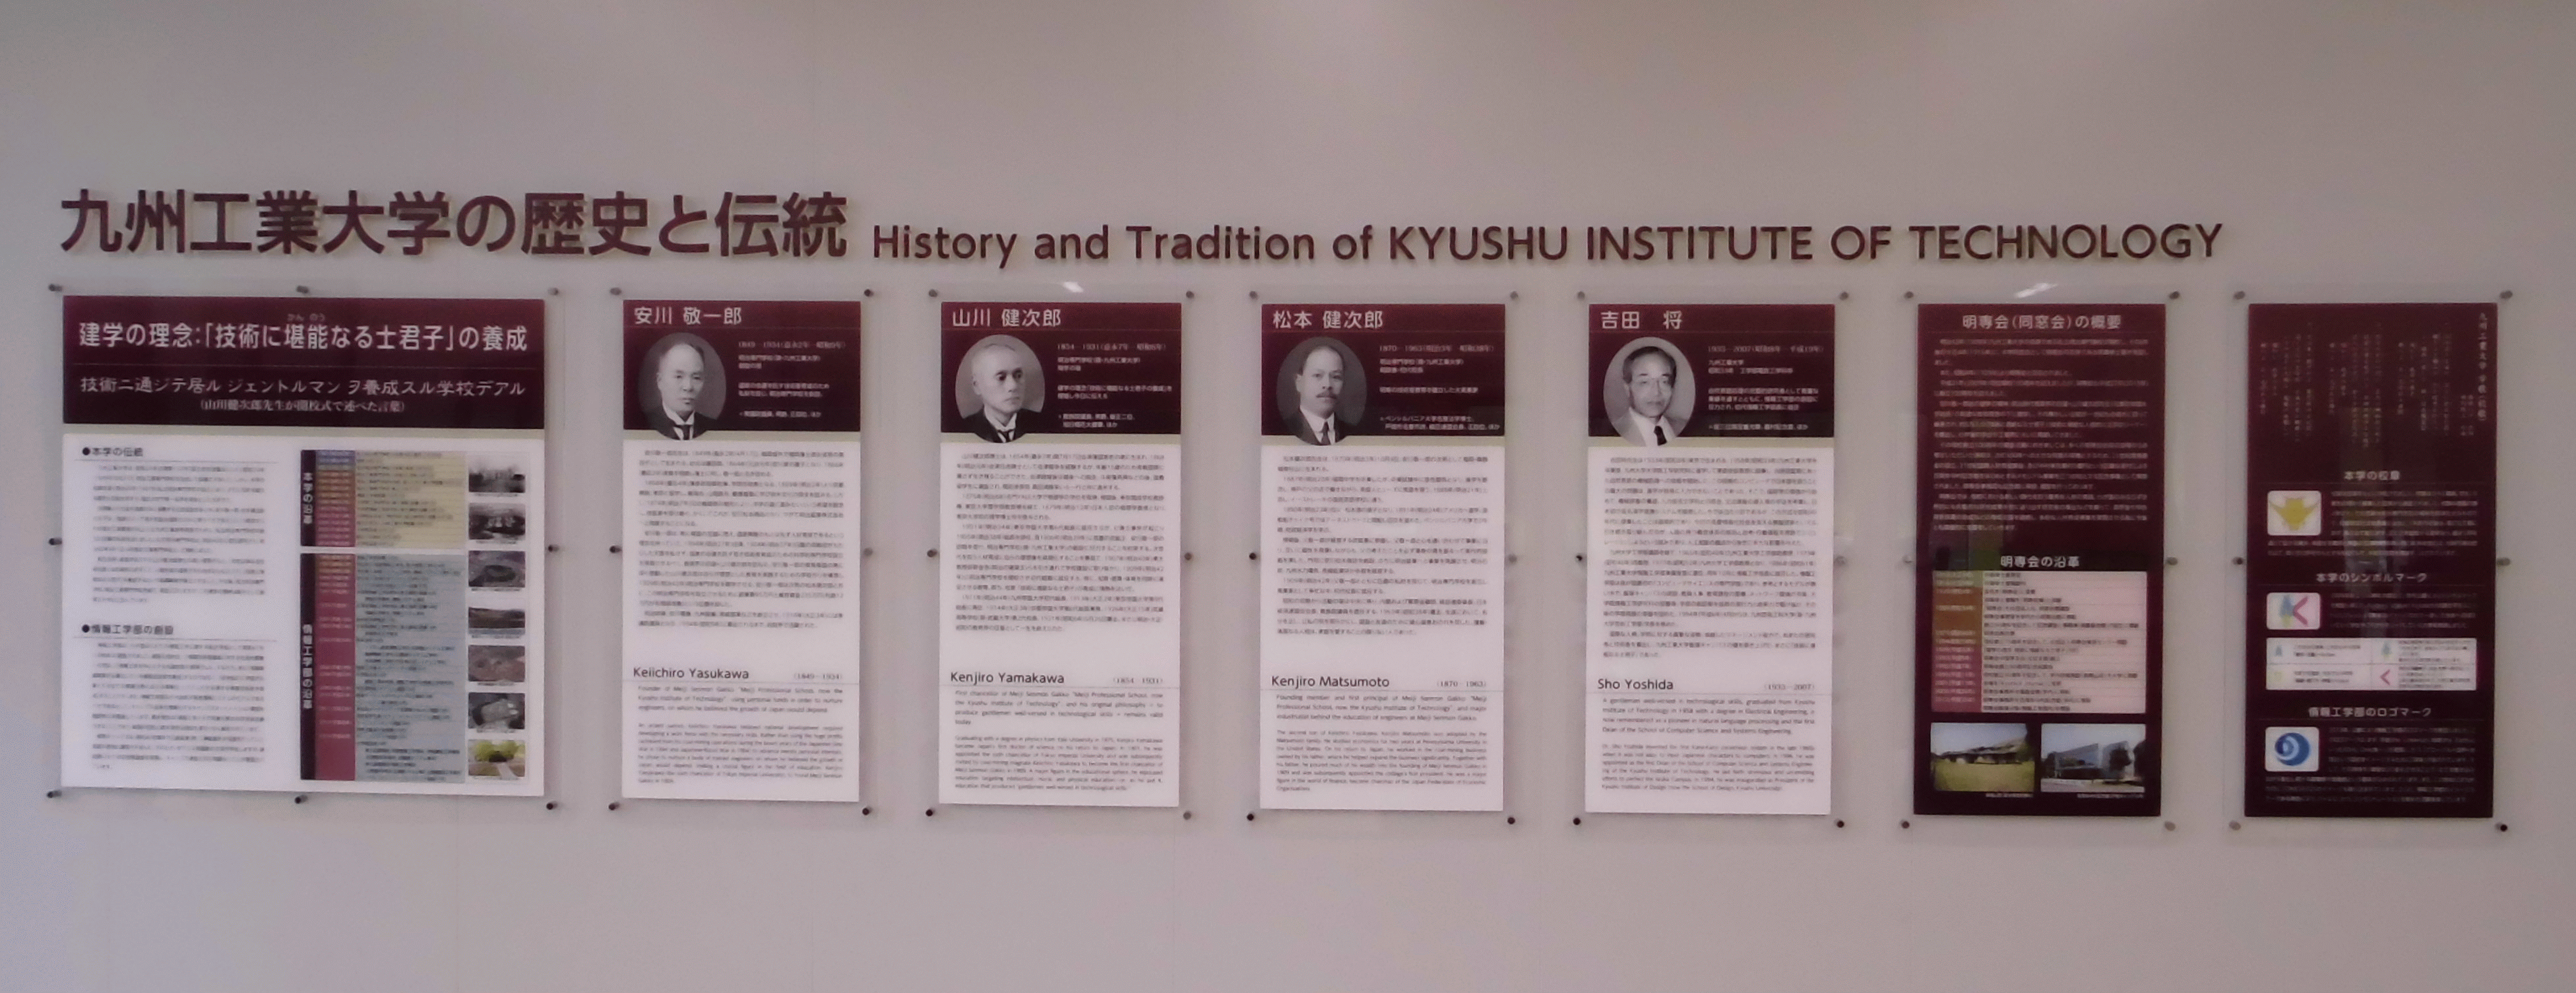 九州工業大学の歴史と伝統(パネルの全体像)
